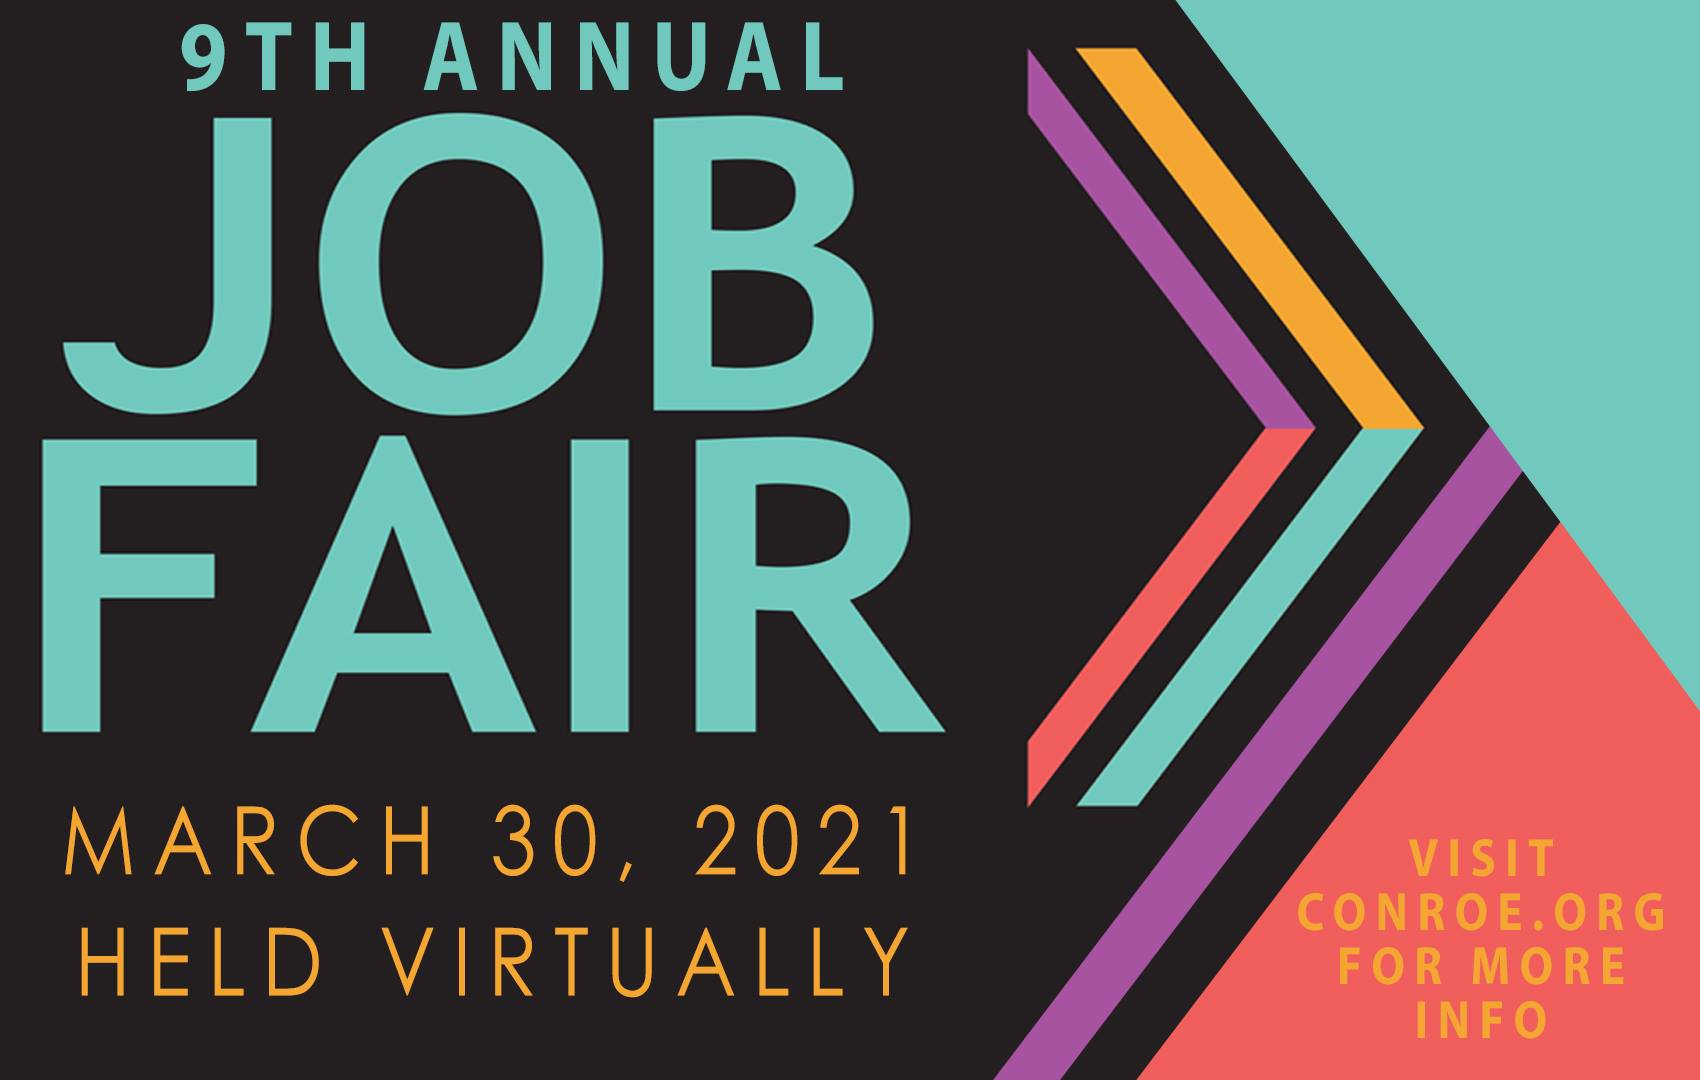 9th Annual Conroe Job Fair Set for March 30 Utilizing Virtual Platform Main Photo